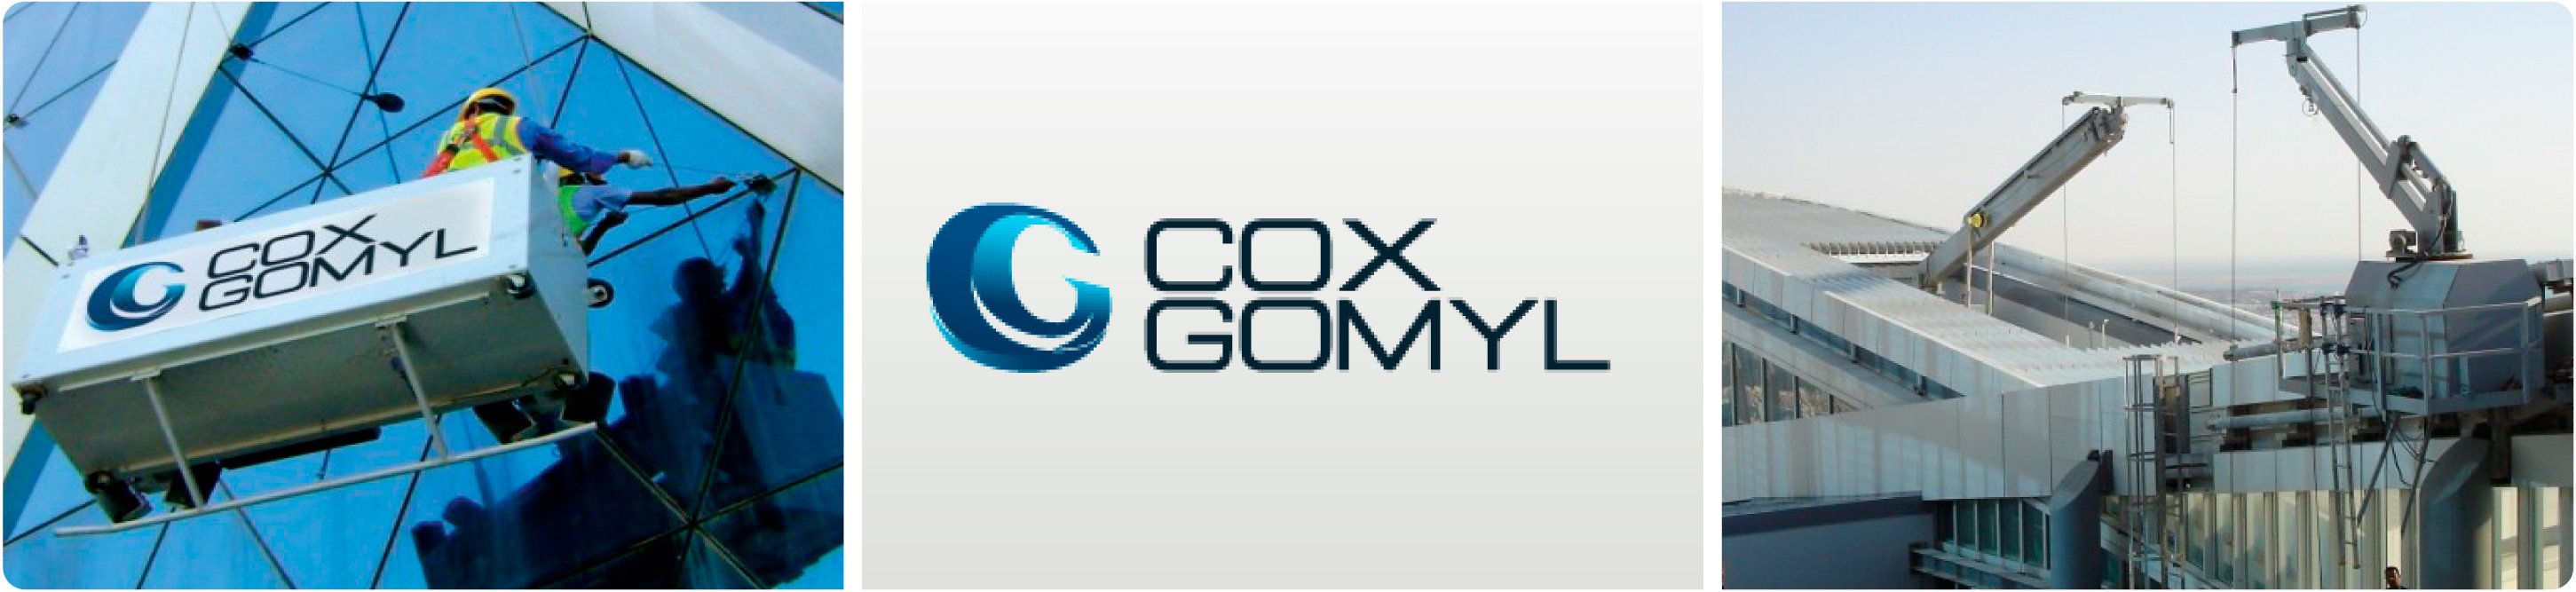 cox-gomyl